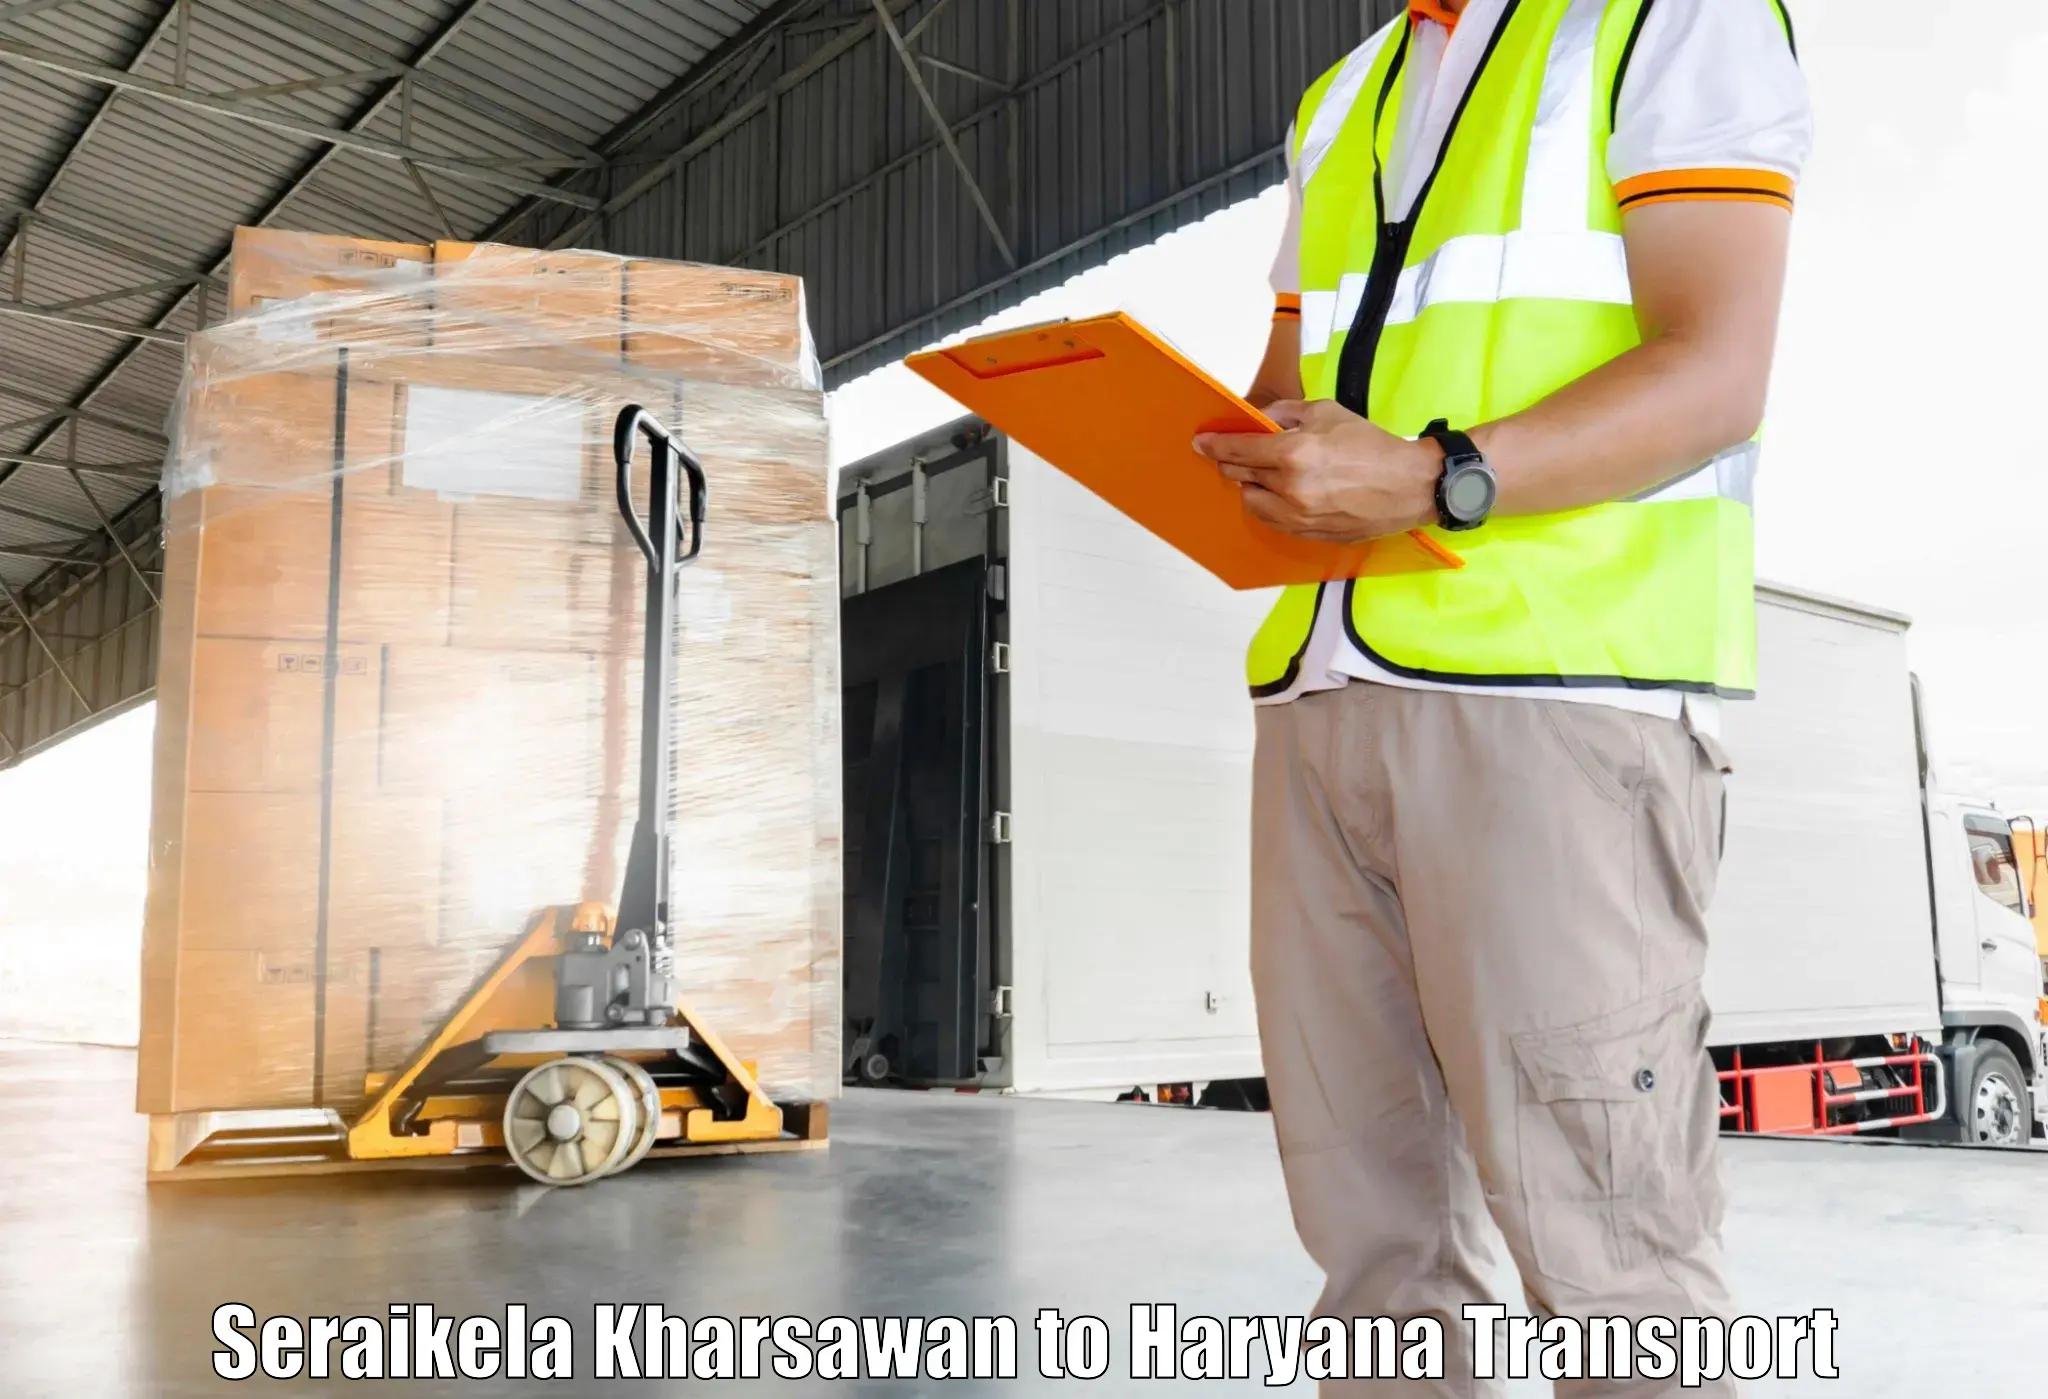 Daily parcel service transport in Seraikela Kharsawan to Karnal